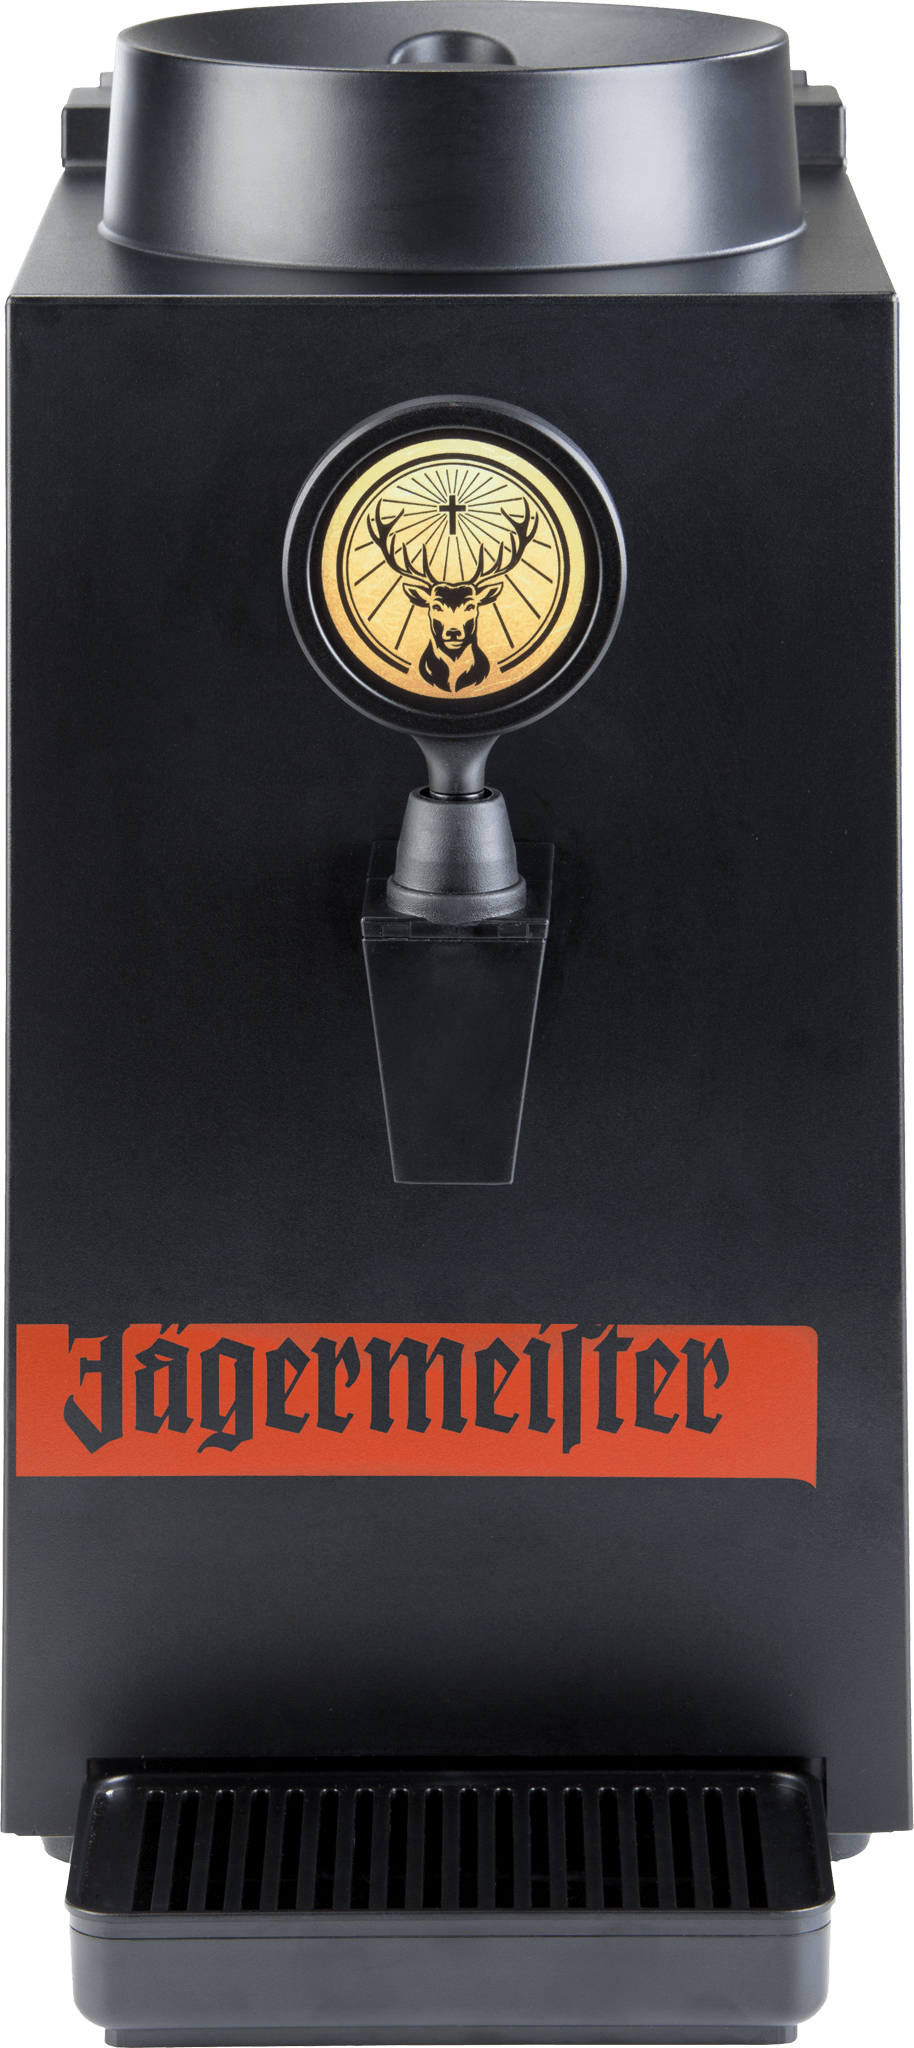 Jägermeister Tap Machine 1 Bottle kaufen